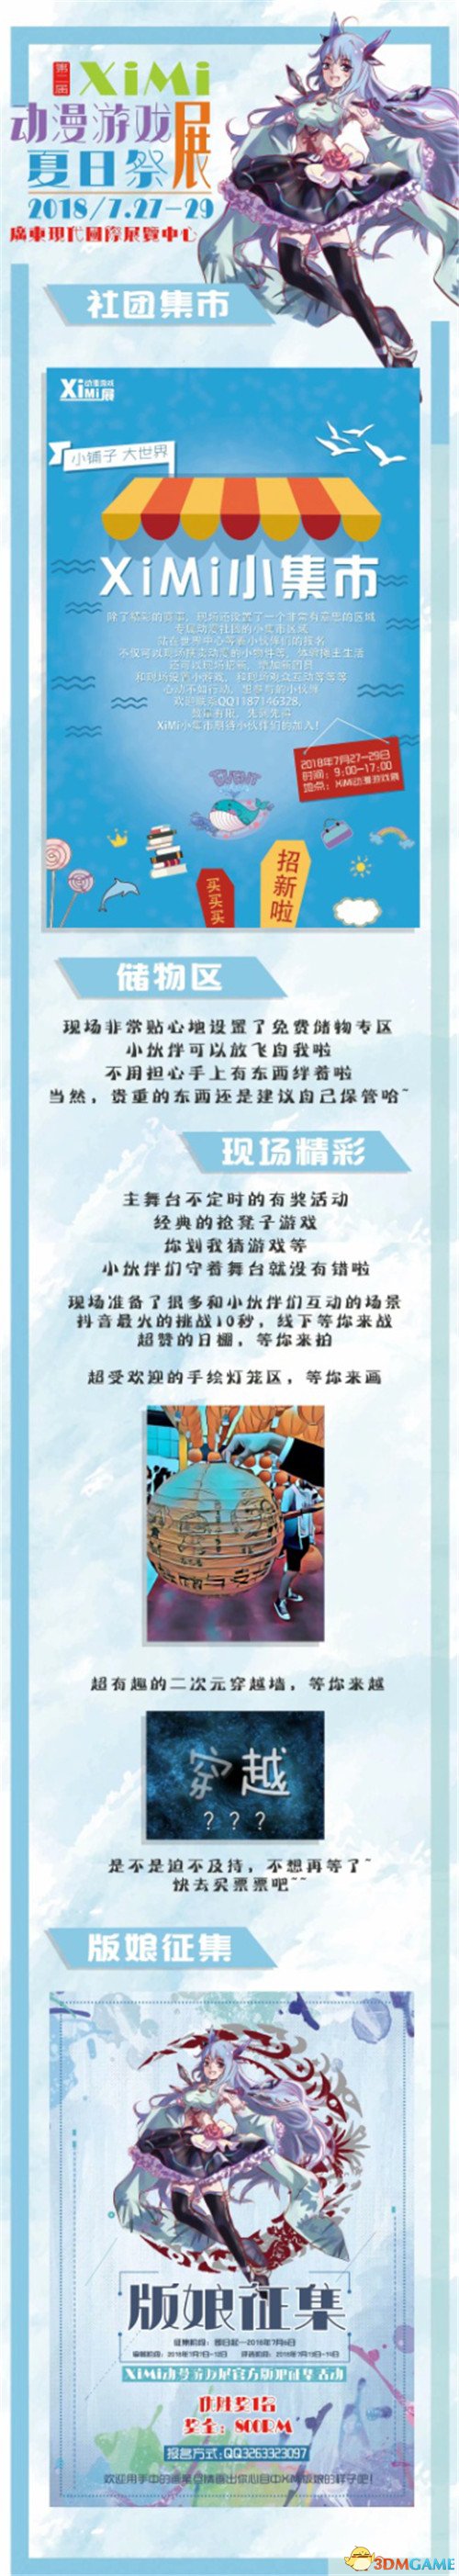 重庆海游携《推理学院》参展XiMi第二届动漫游戏展